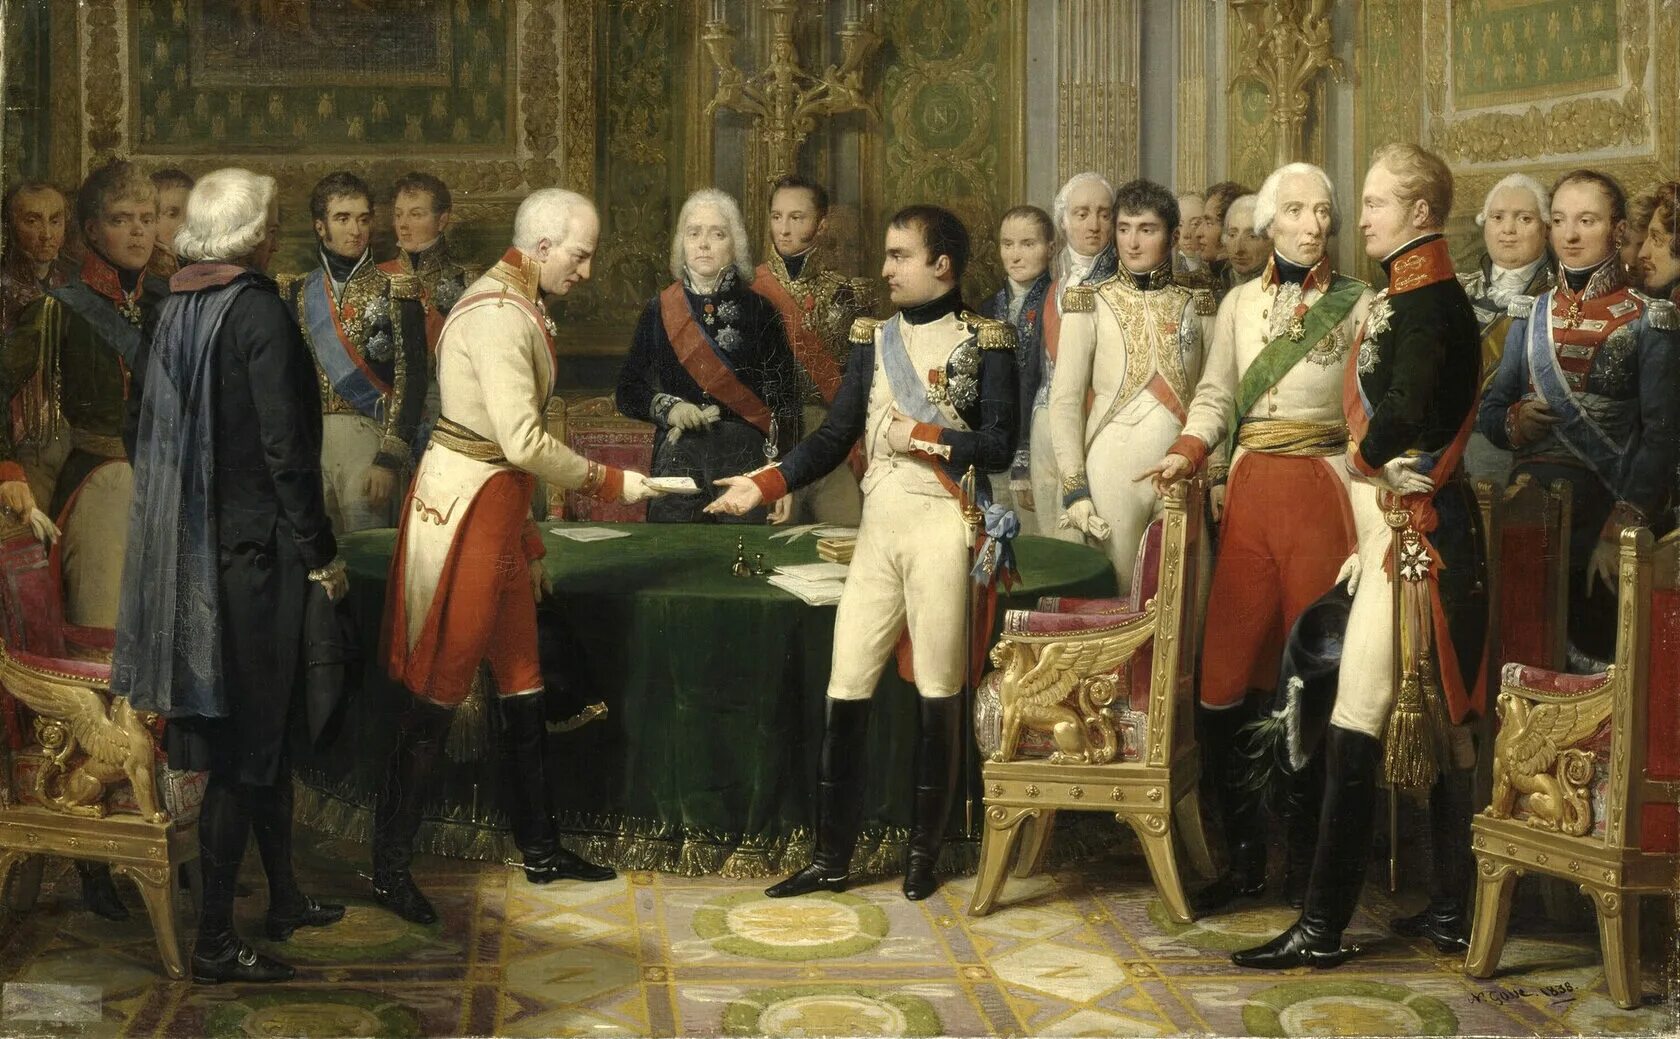 Российская дипломатия в 17 веке. Наполеон и александр1 в эйфурте. Эрфуртский конгресс 1808. Встреча Наполеона с Александром 1 в Эрфруте.